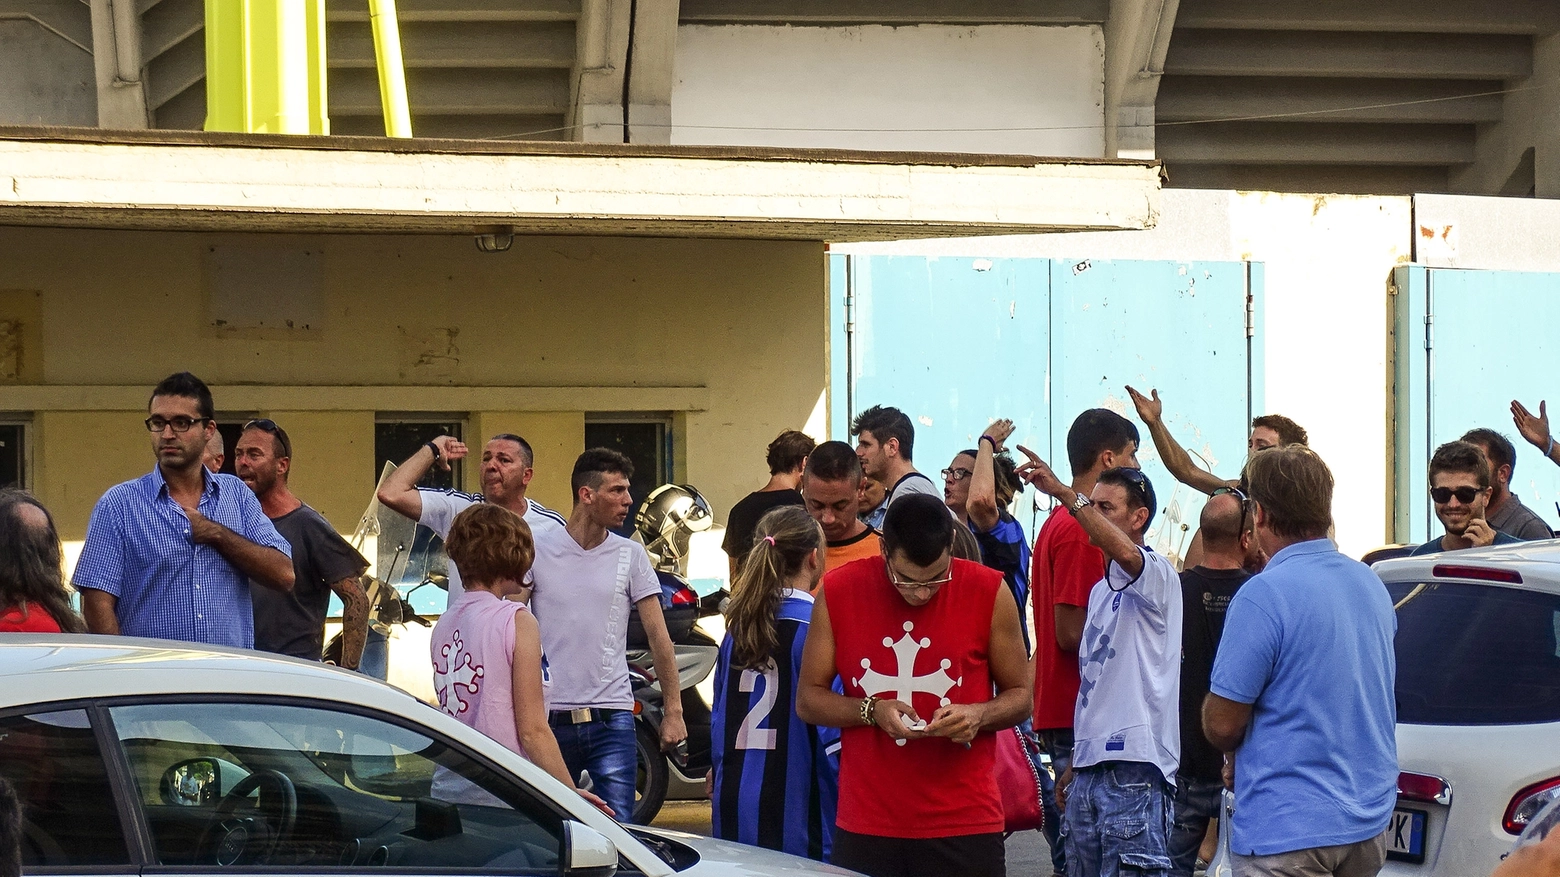 Tifosi all'Arena Garibaldi in attesa delle decisioni sui ripescaggi (Salvini)